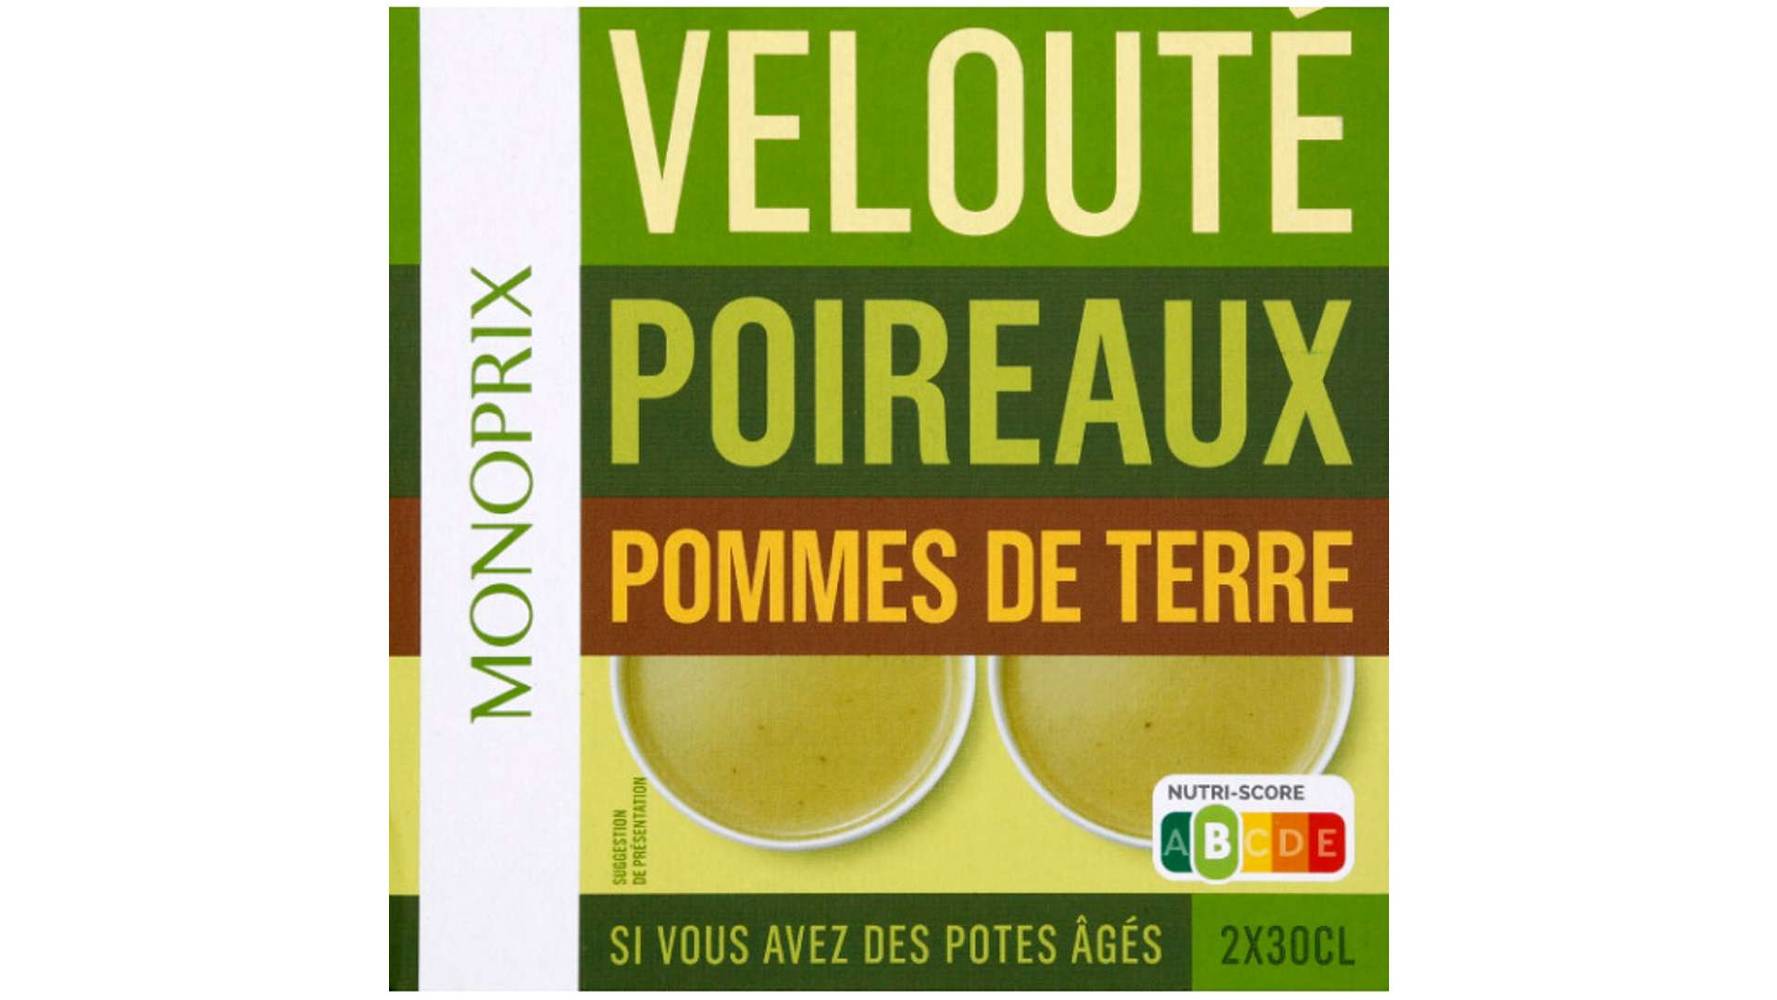 Monoprix - Velouté (poireaux - pommes de terre )